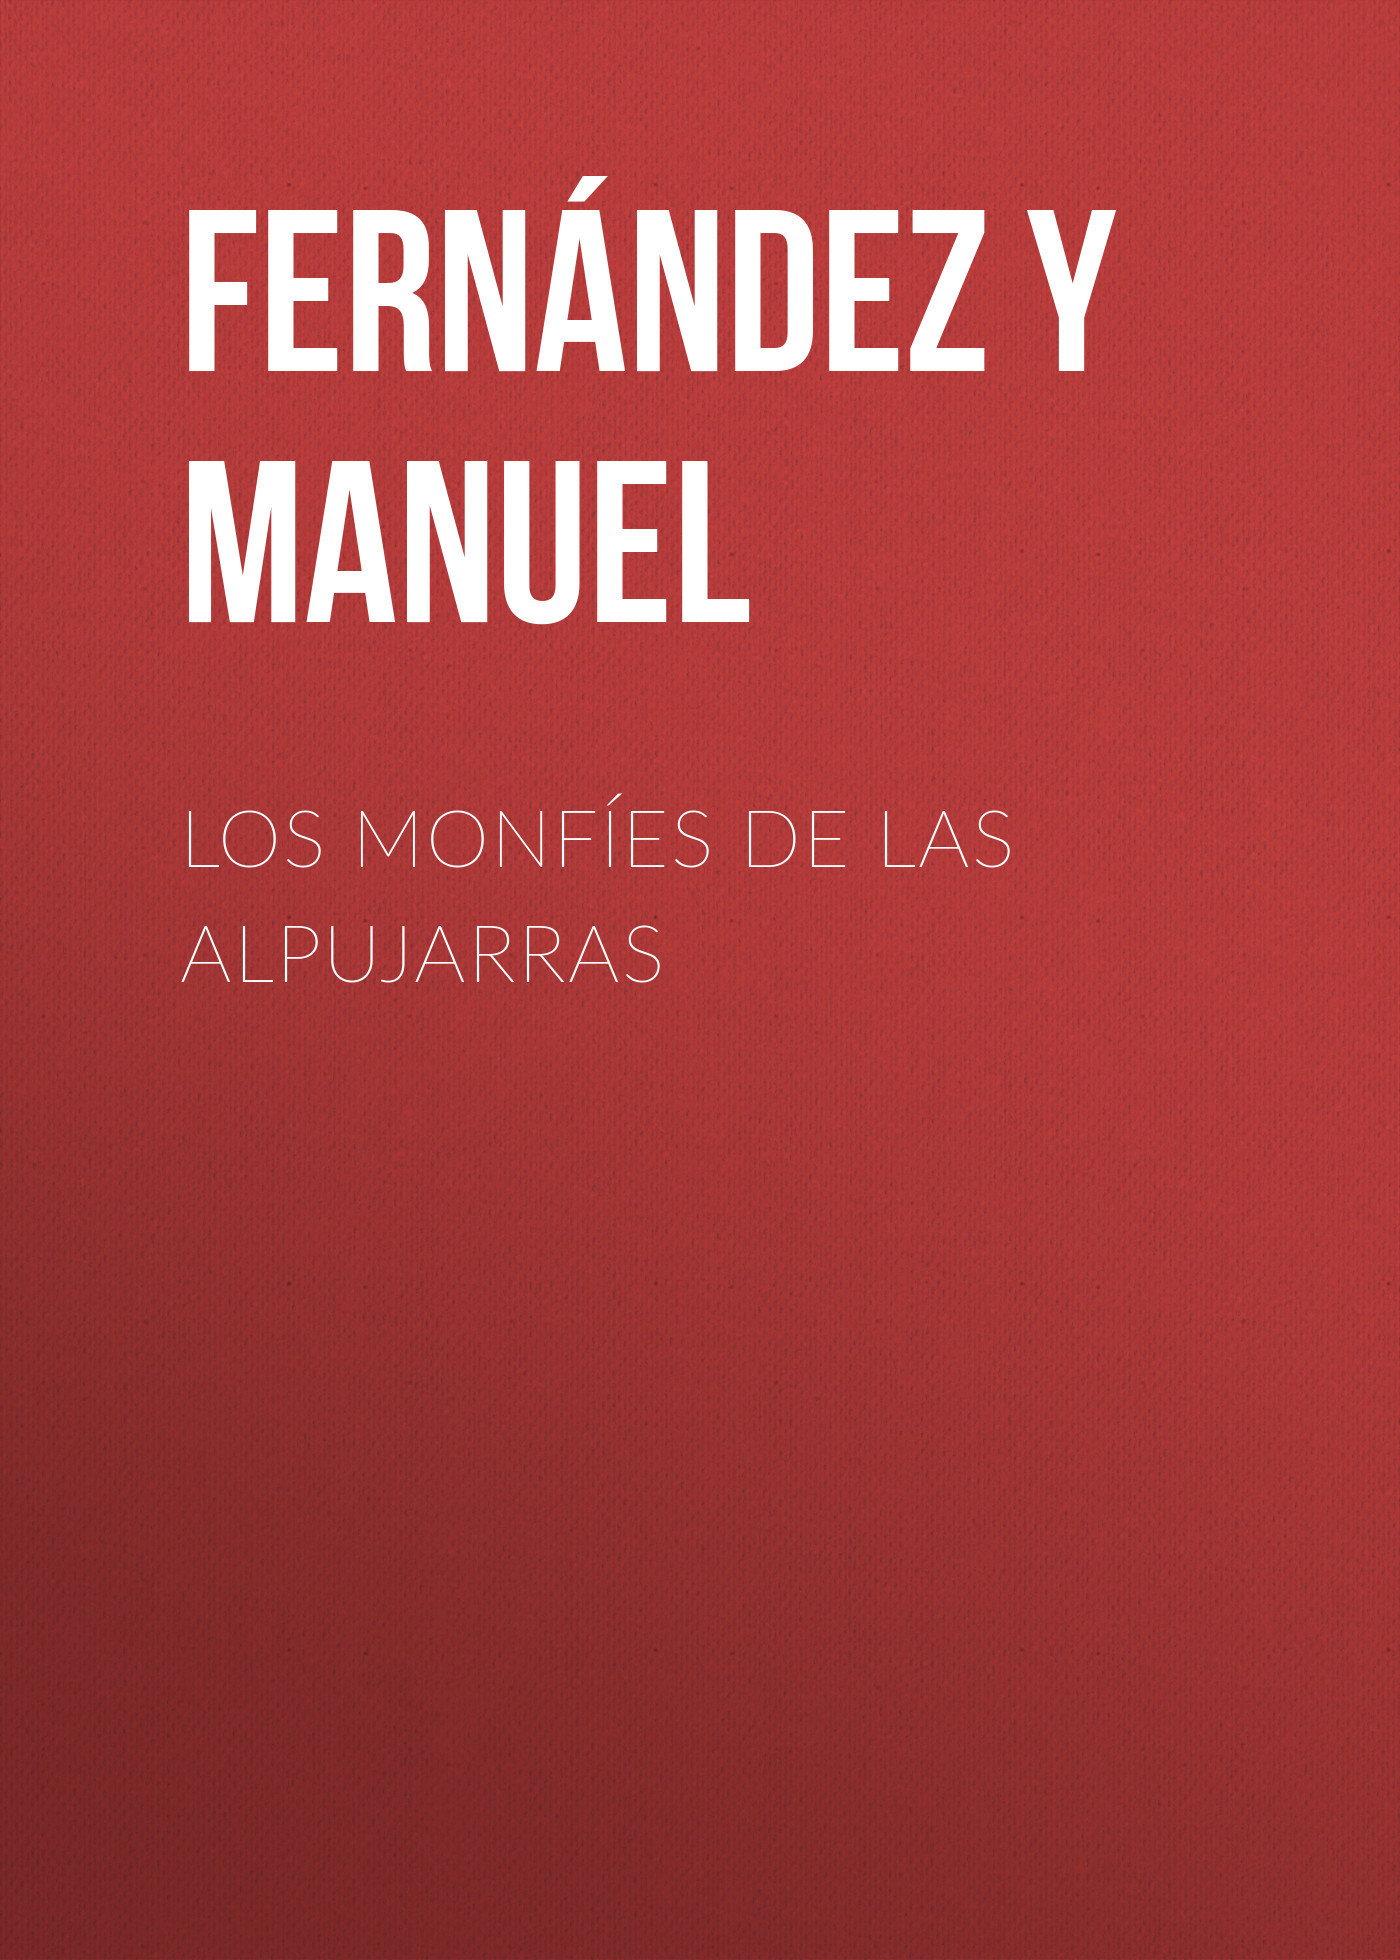 Книга Los monfíes de las Alpujarras из серии , созданная Manuel Fernández y González, может относится к жанру Зарубежная старинная литература, Зарубежная классика. Стоимость электронной книги Los monfíes de las Alpujarras с идентификатором 24728905 составляет 0 руб.